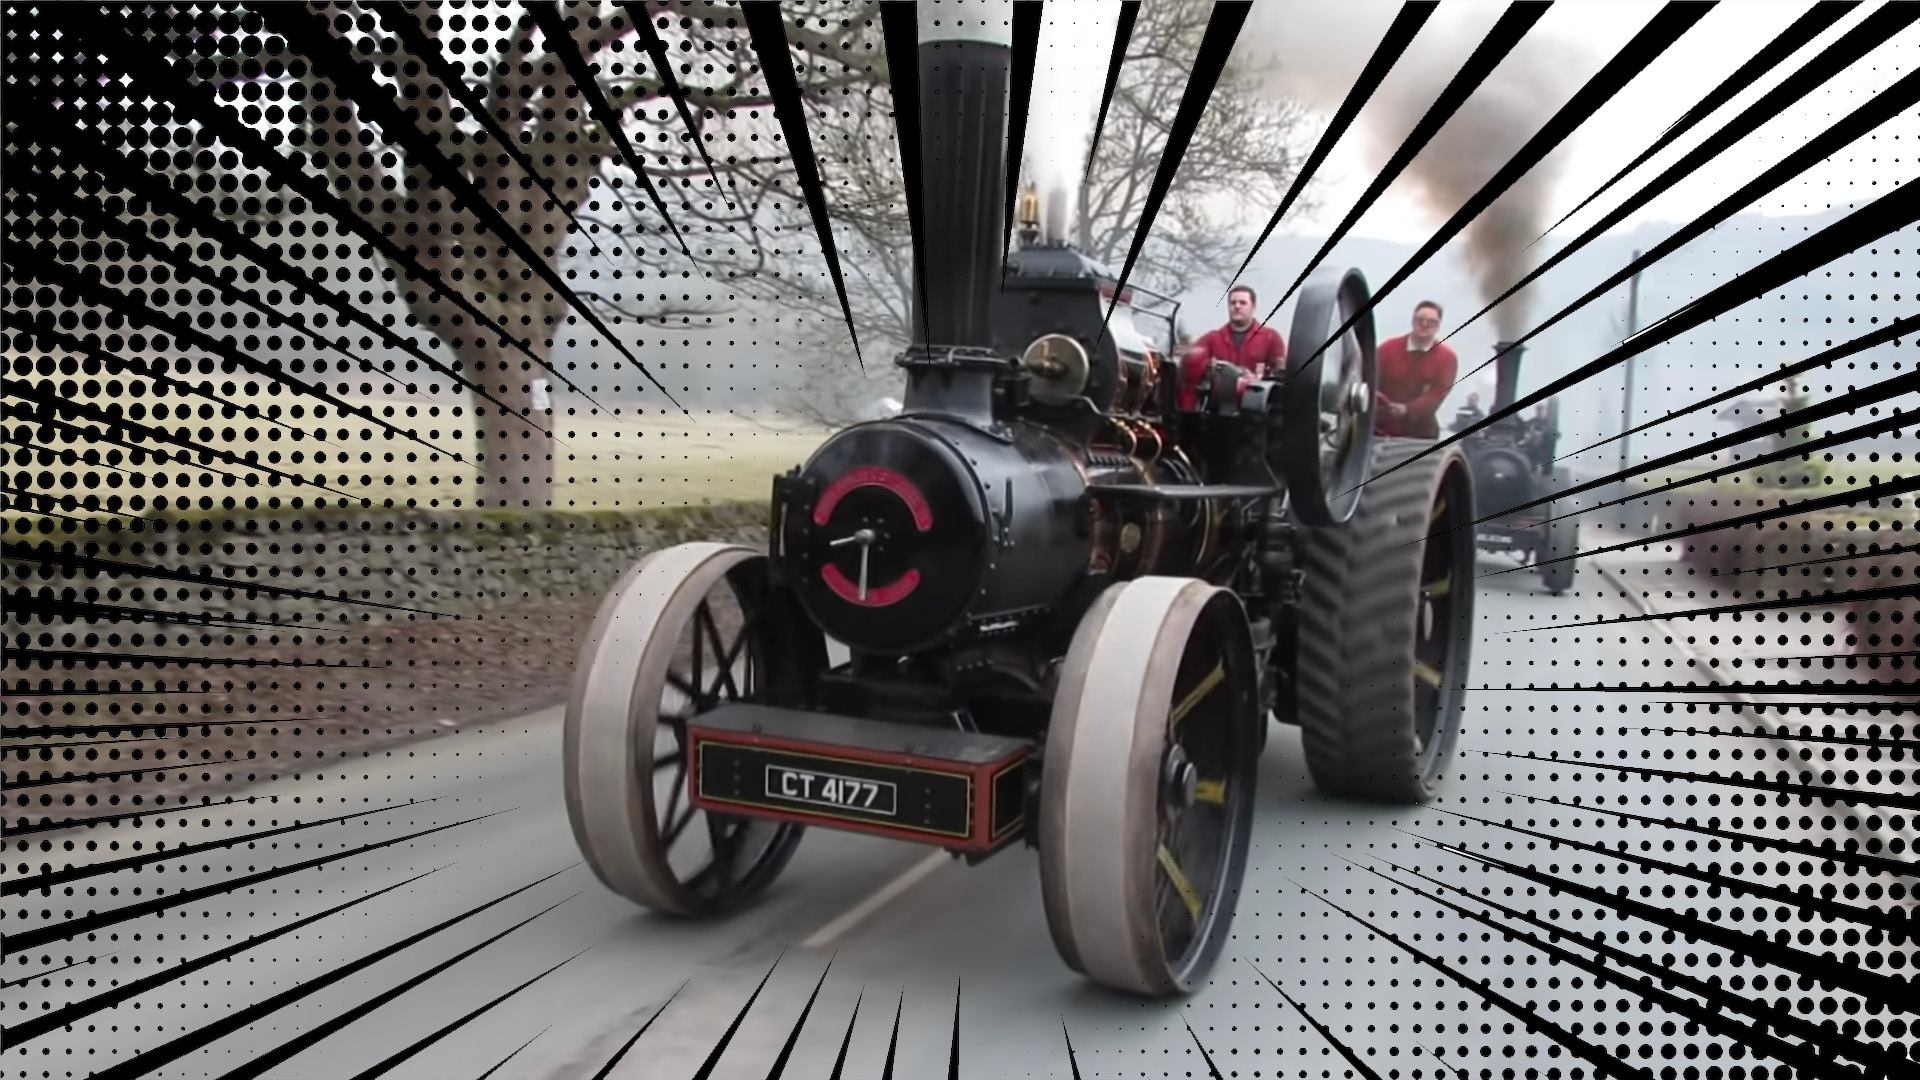 蒸汽拖拉机换车道在英国农村,以anime-inspired速度线覆盖了喜剧效果